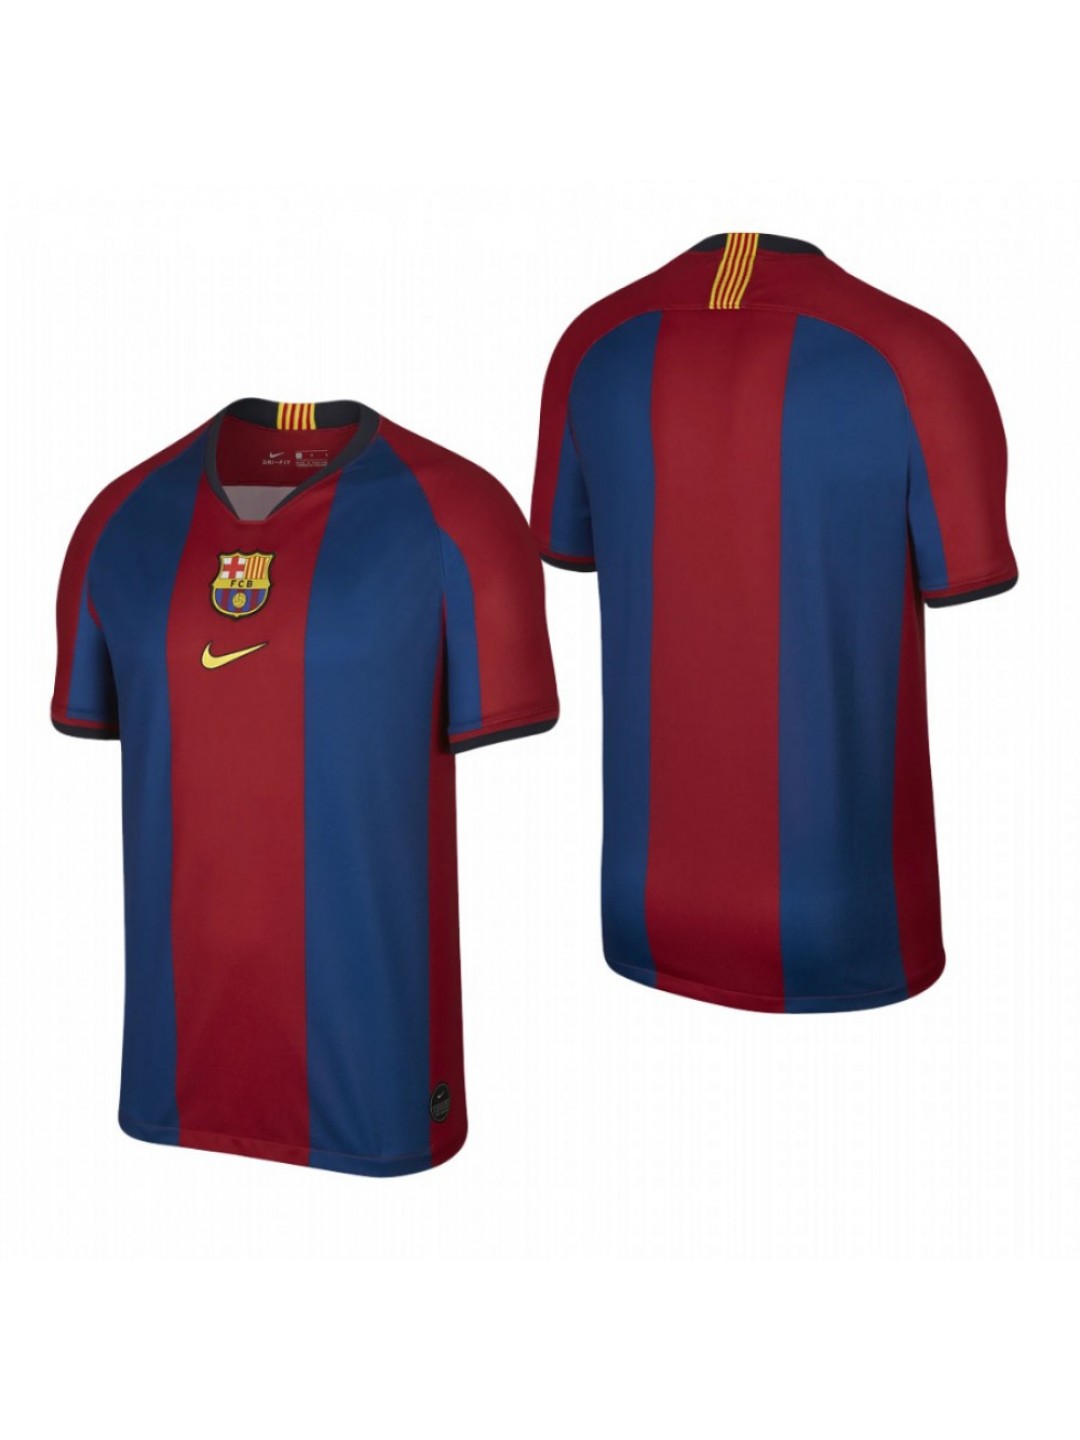 Comprar Camiseta Barcelona Celebración Clásico Baratas